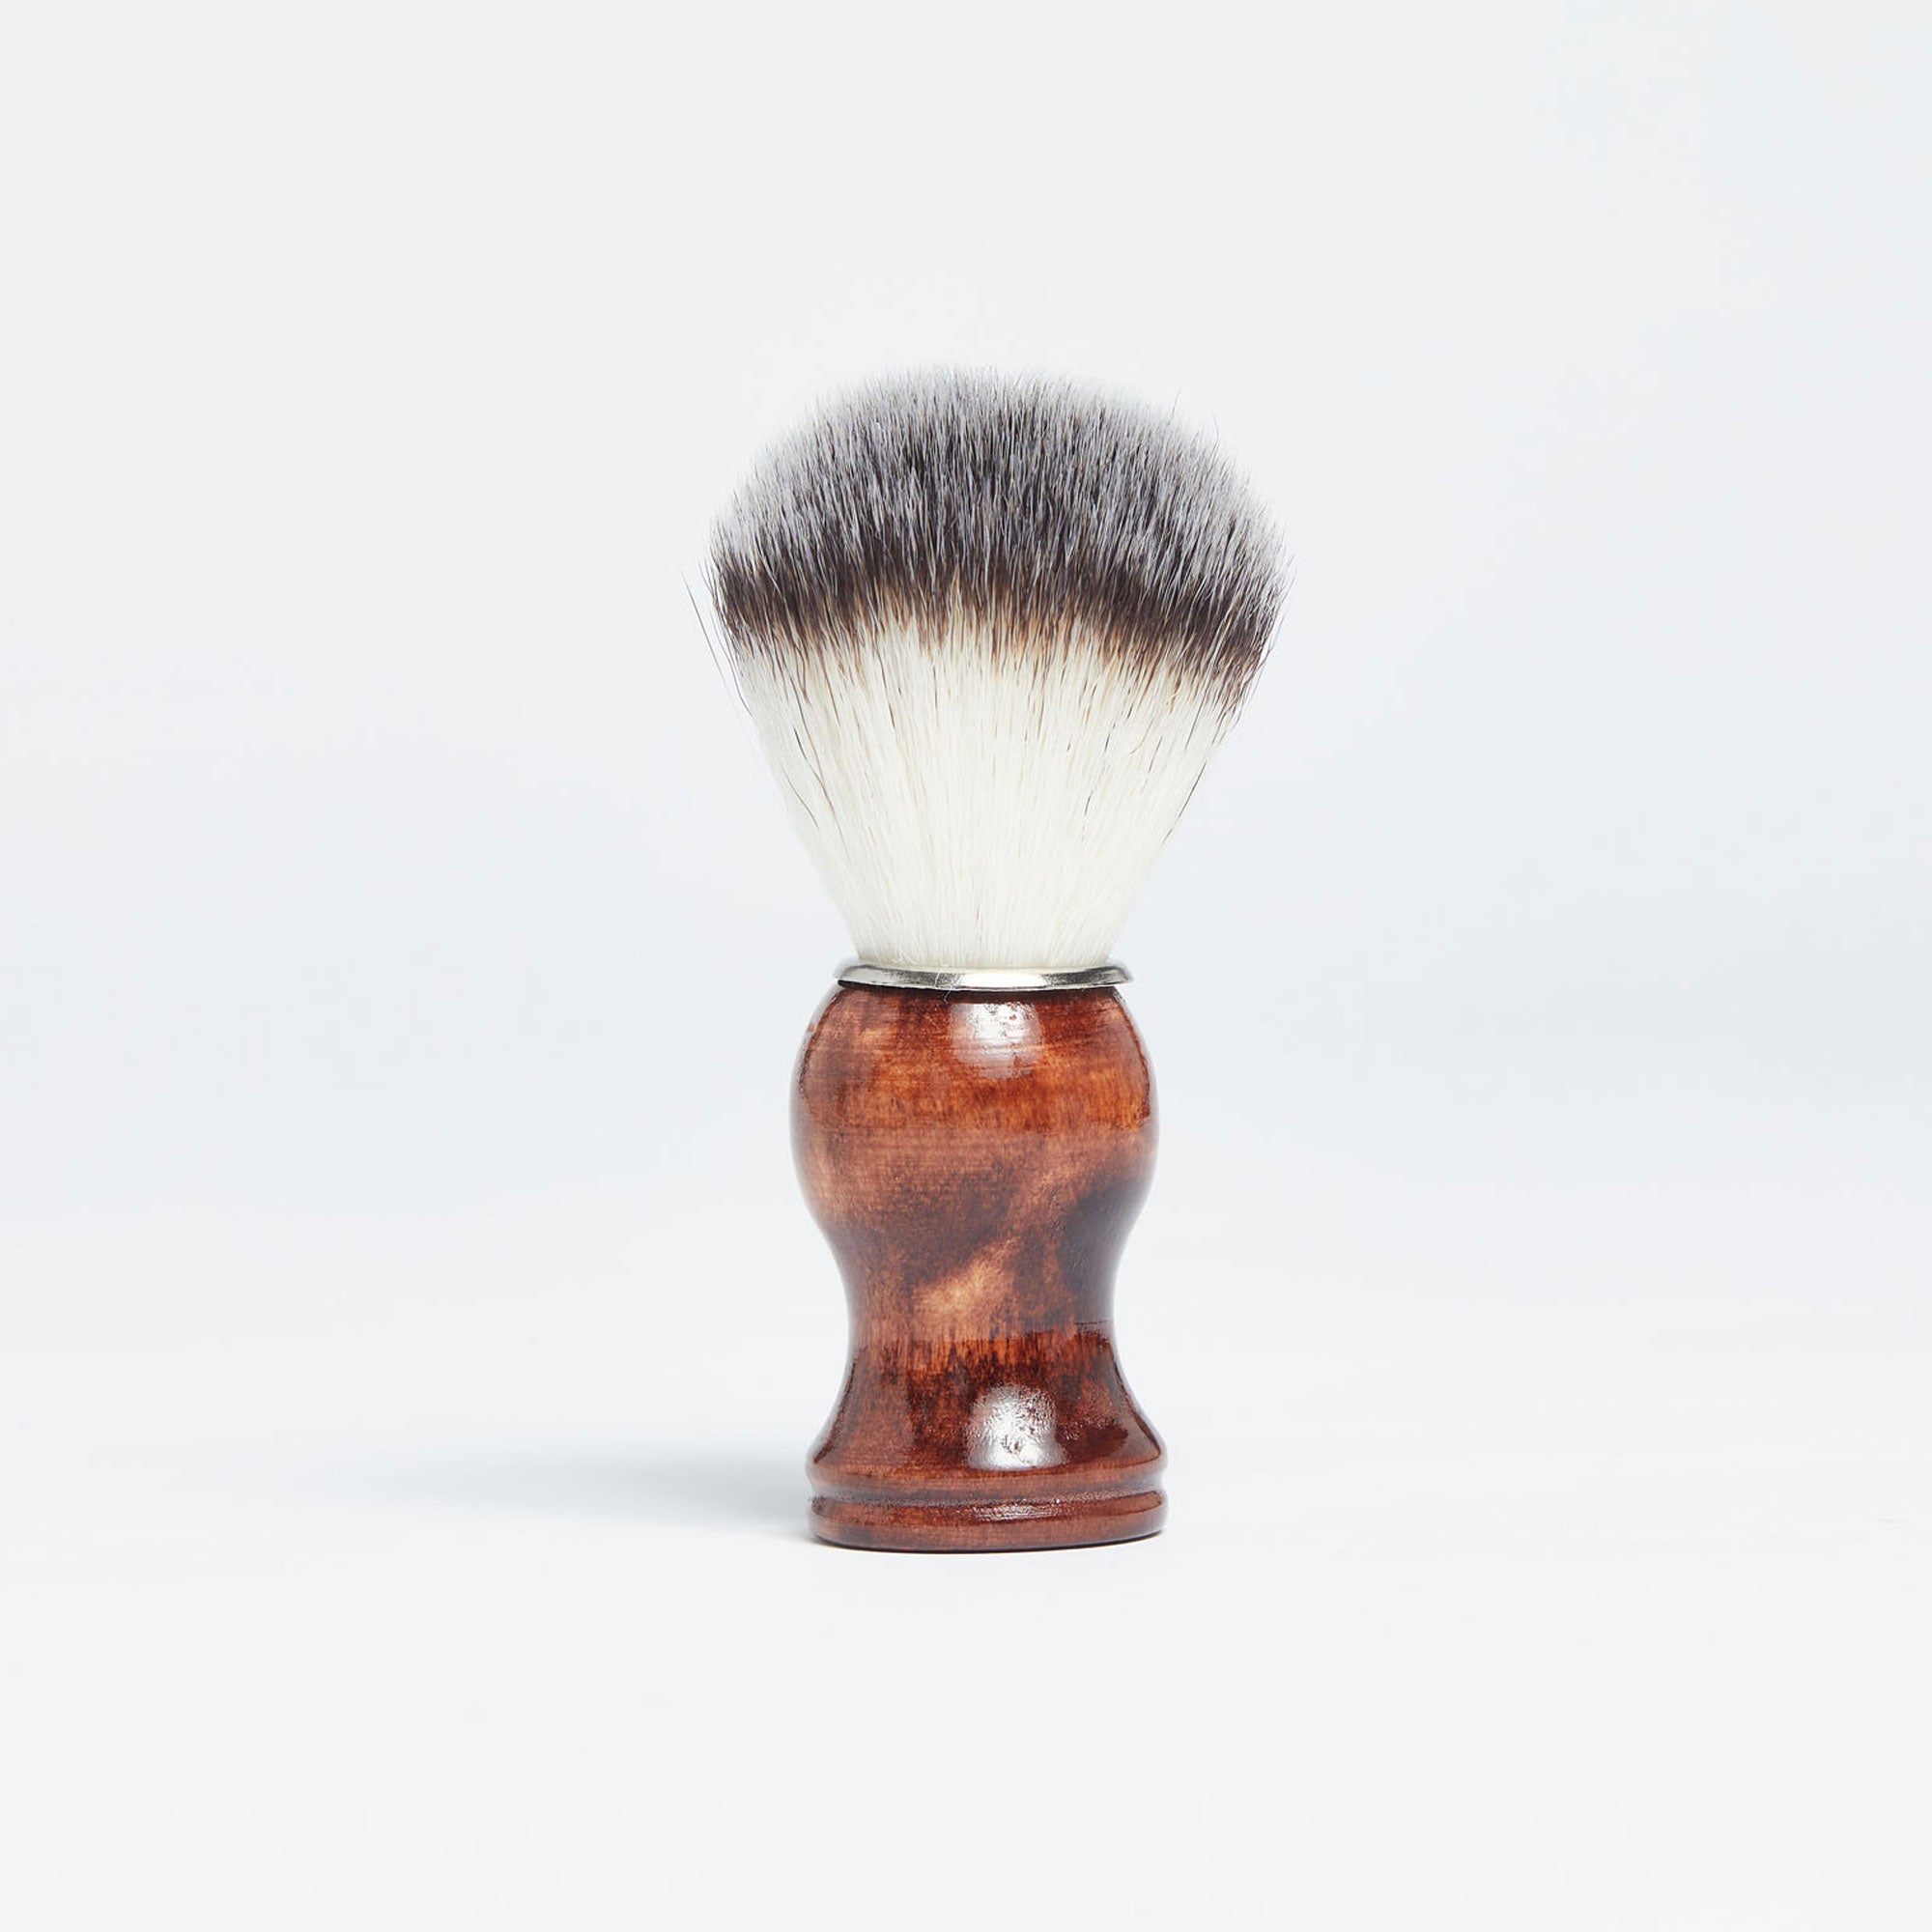 Medium Wood Synthetic Shaving Brush